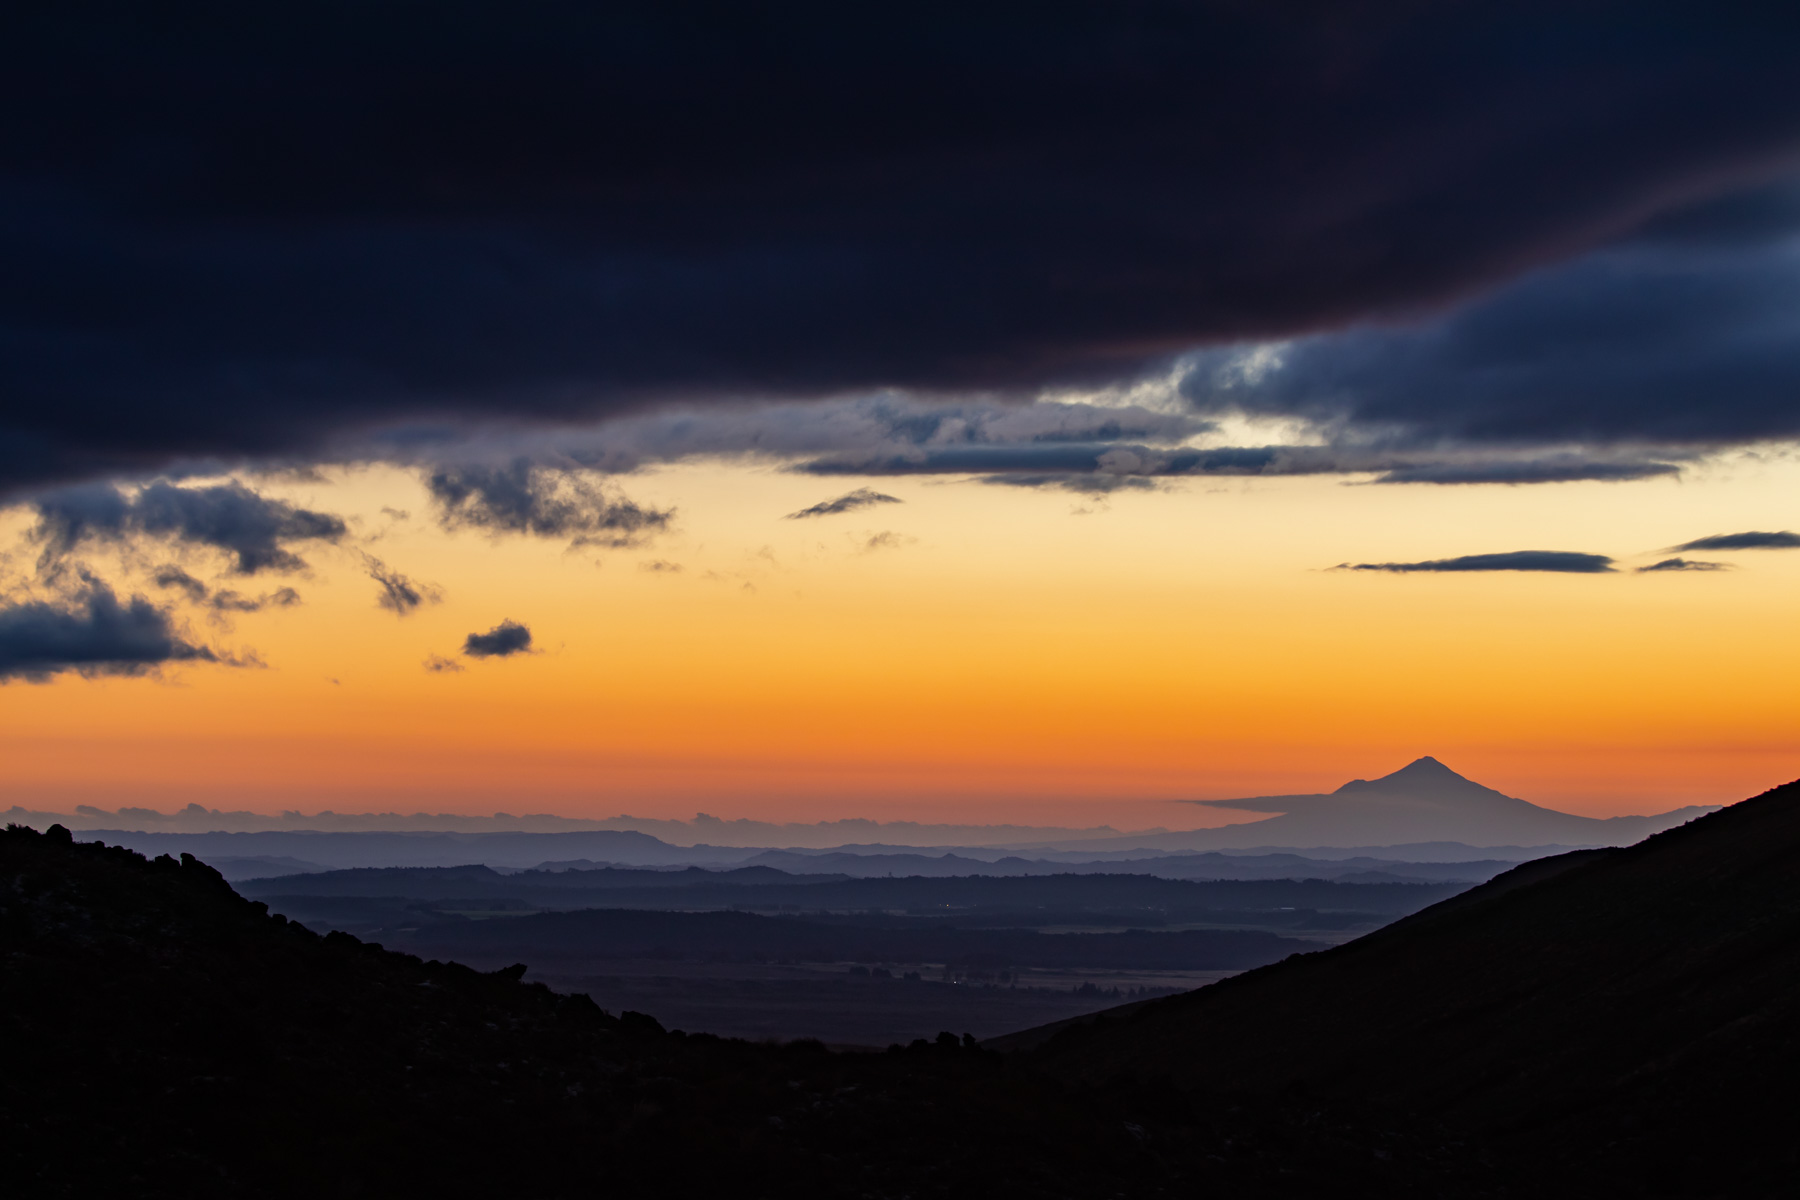 La silhouette du volcan Taranaki se dessine à l’horizon au coucher de soleil.